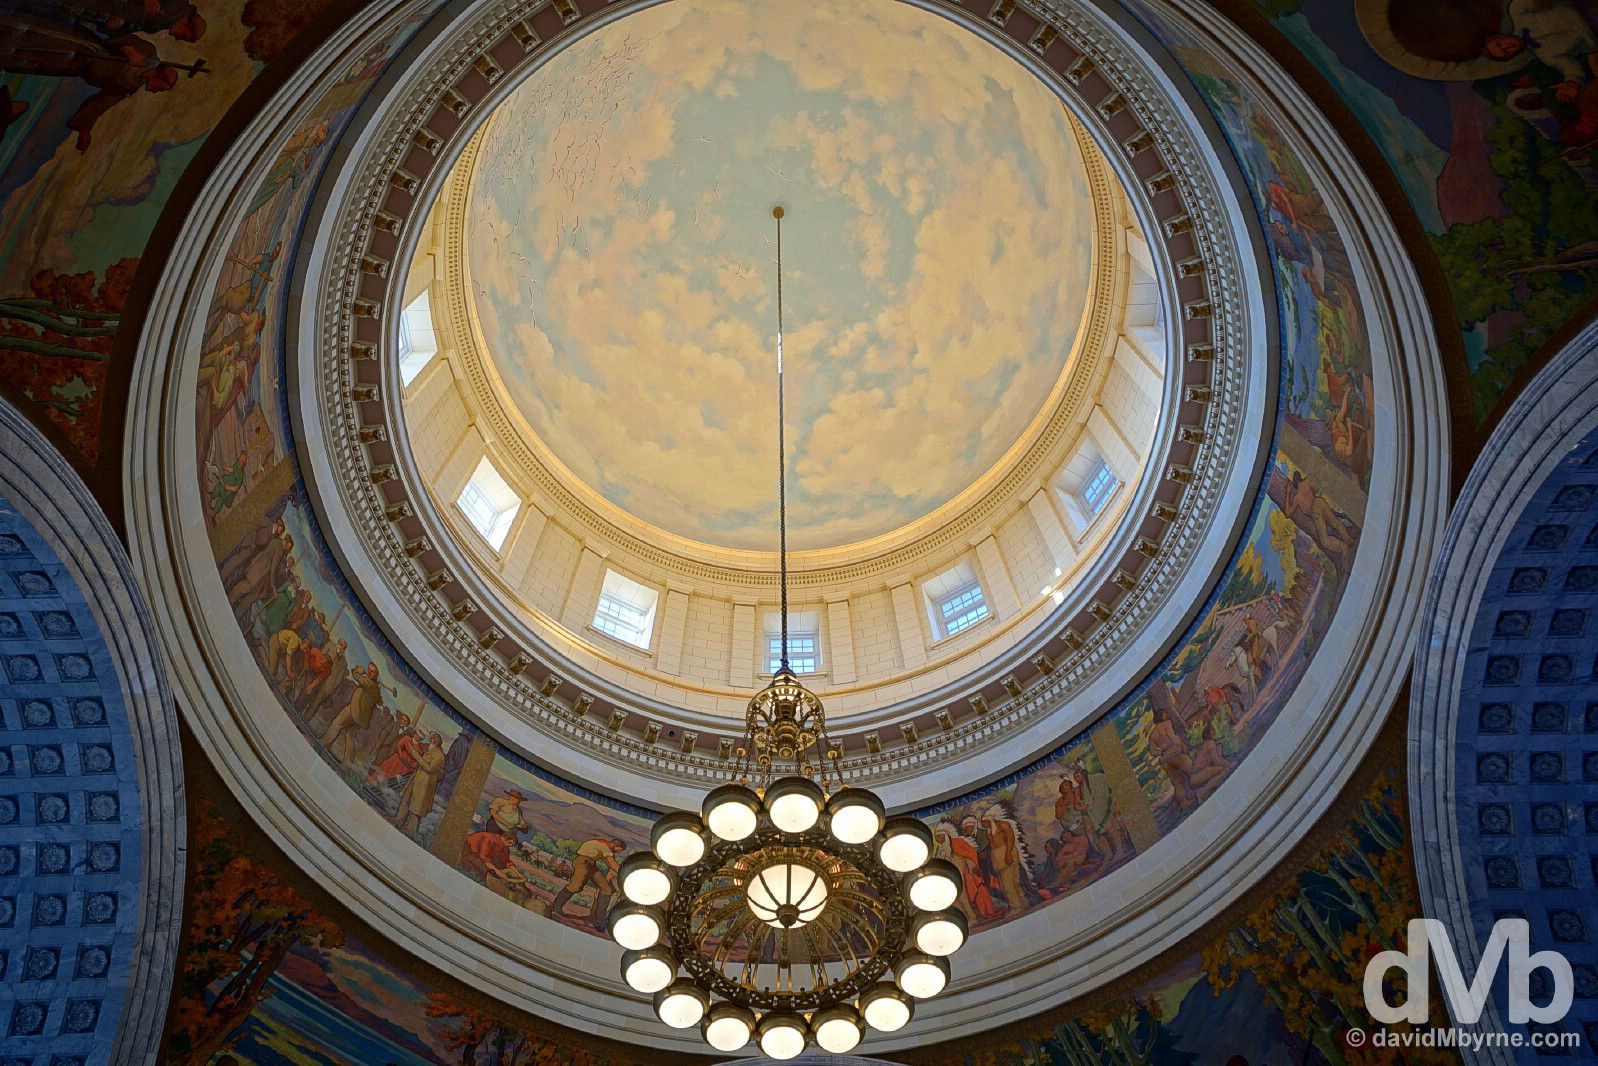 The dome of the Utah State Capitol Building in Salt Lake City, Utah. September 6, 2016.